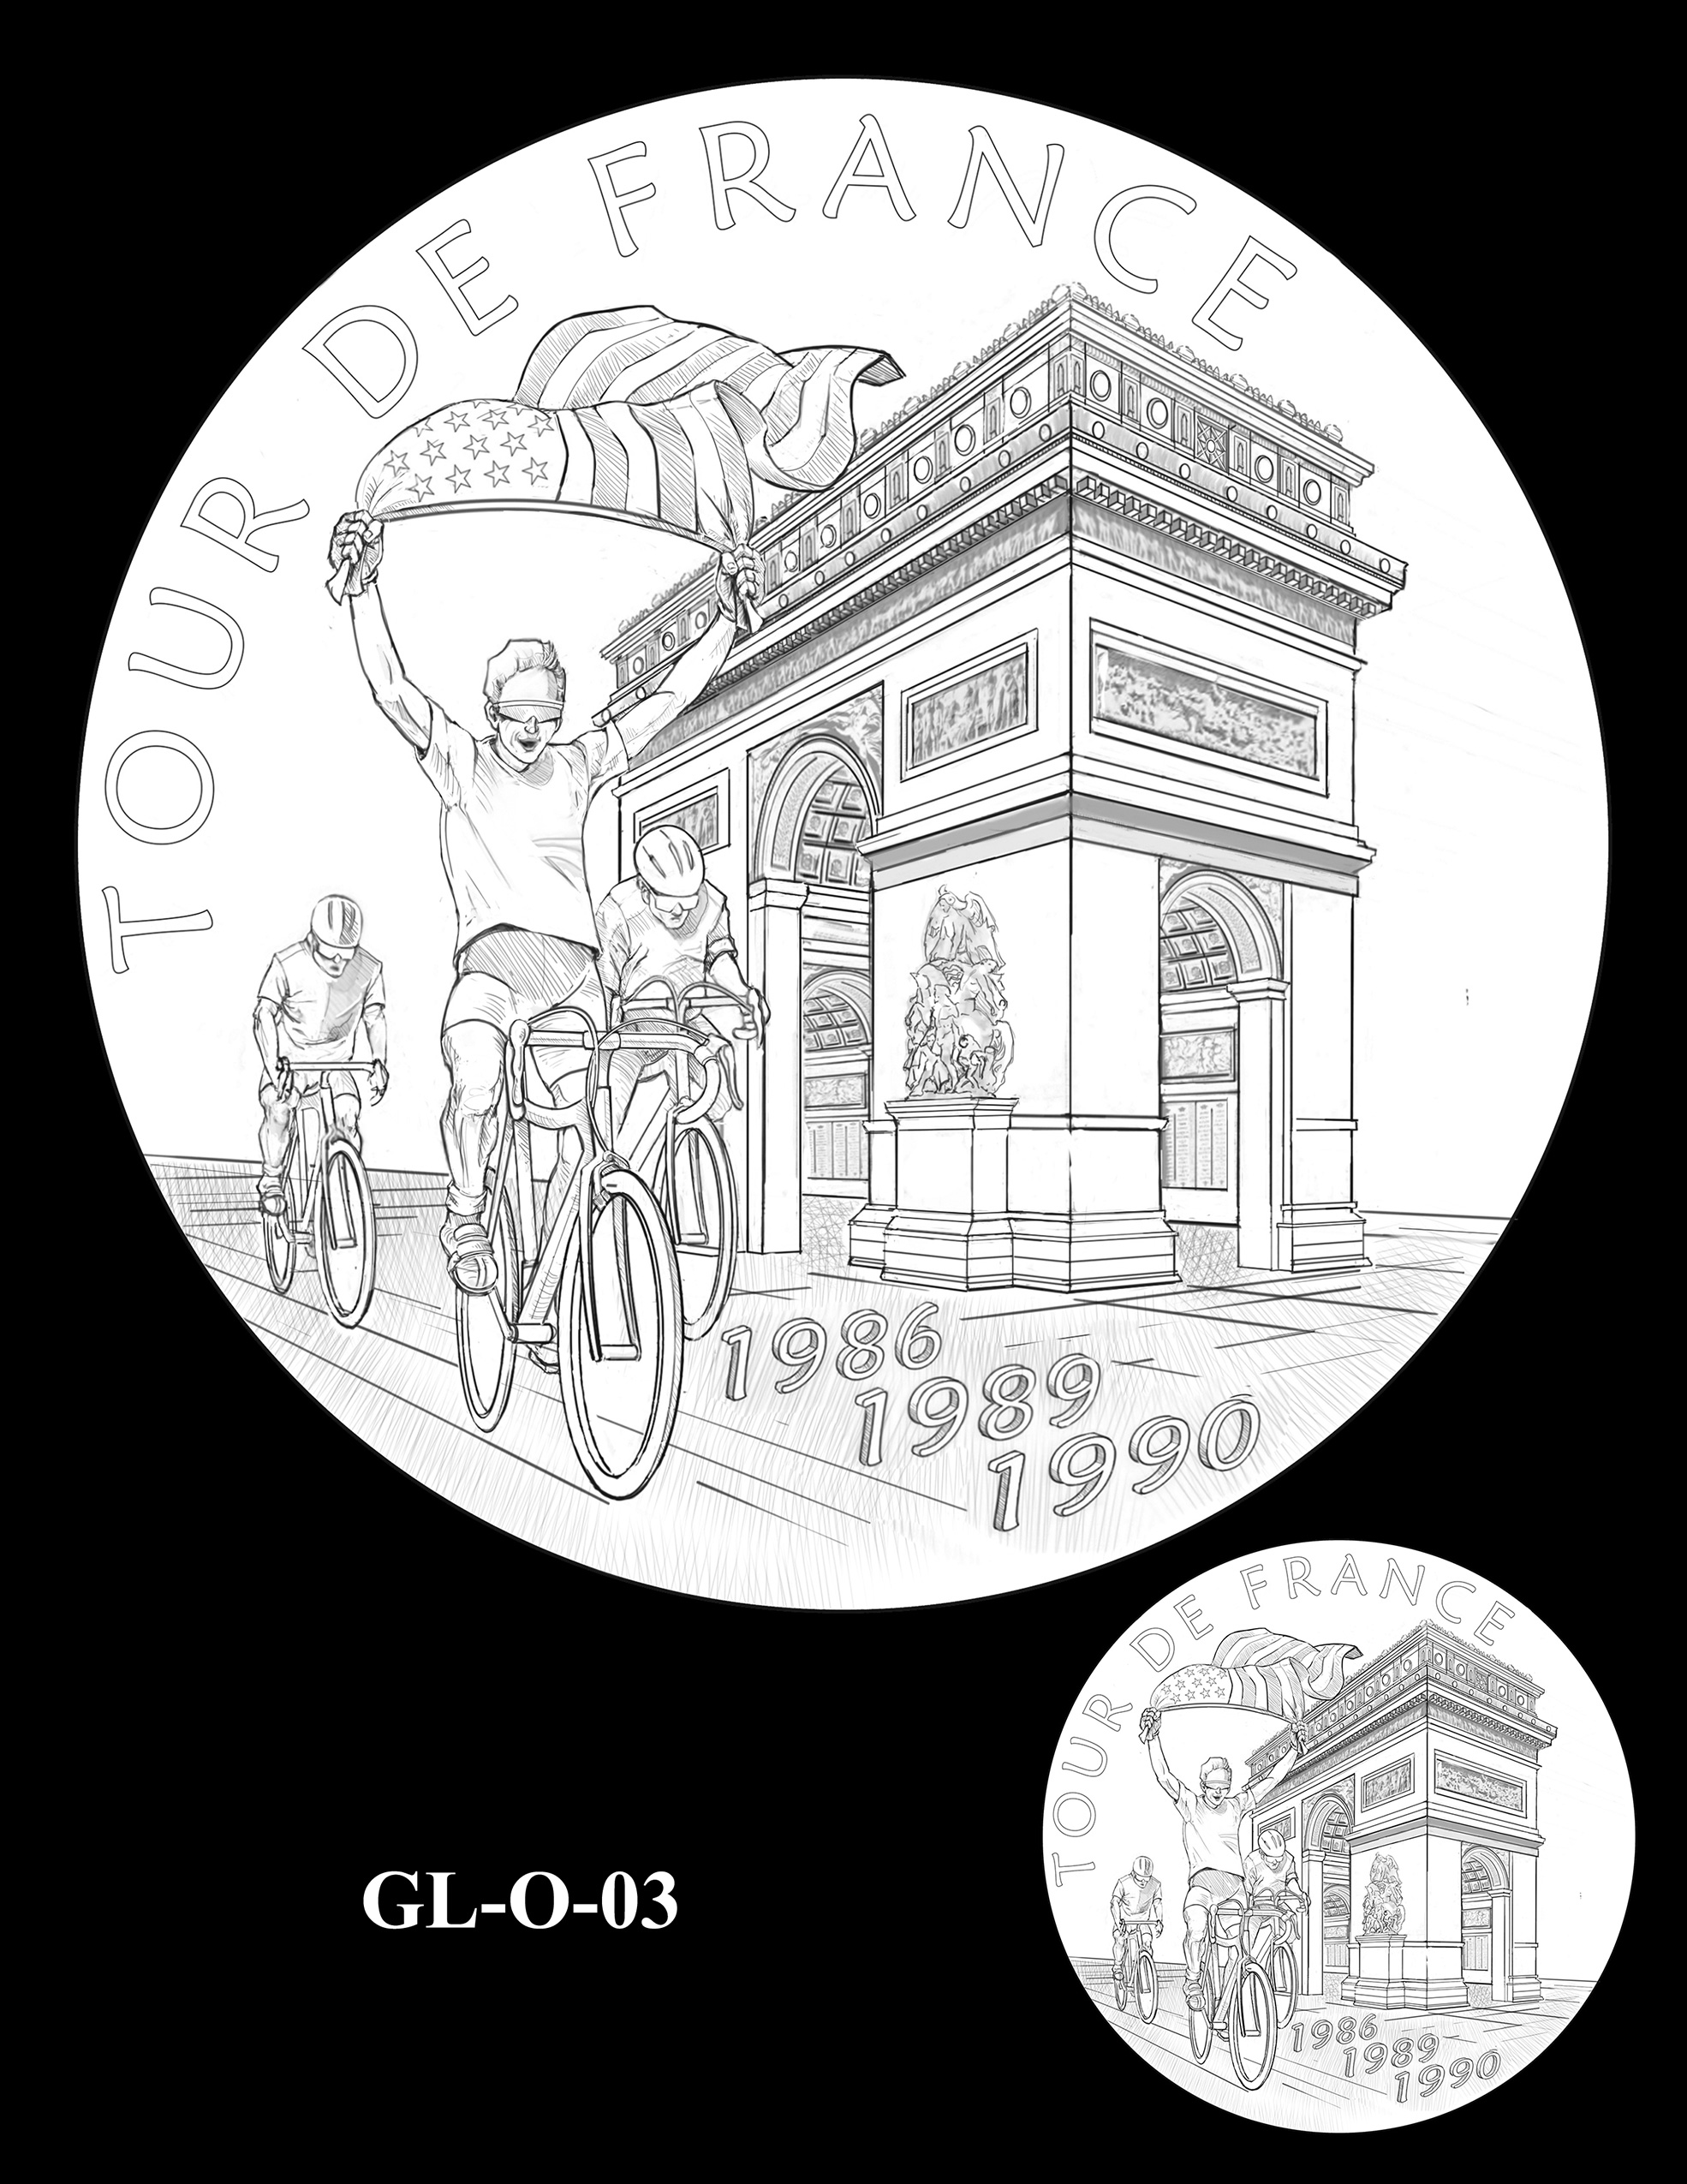 GL-O-03 -- Greg LeMond Congressional Gold Medal